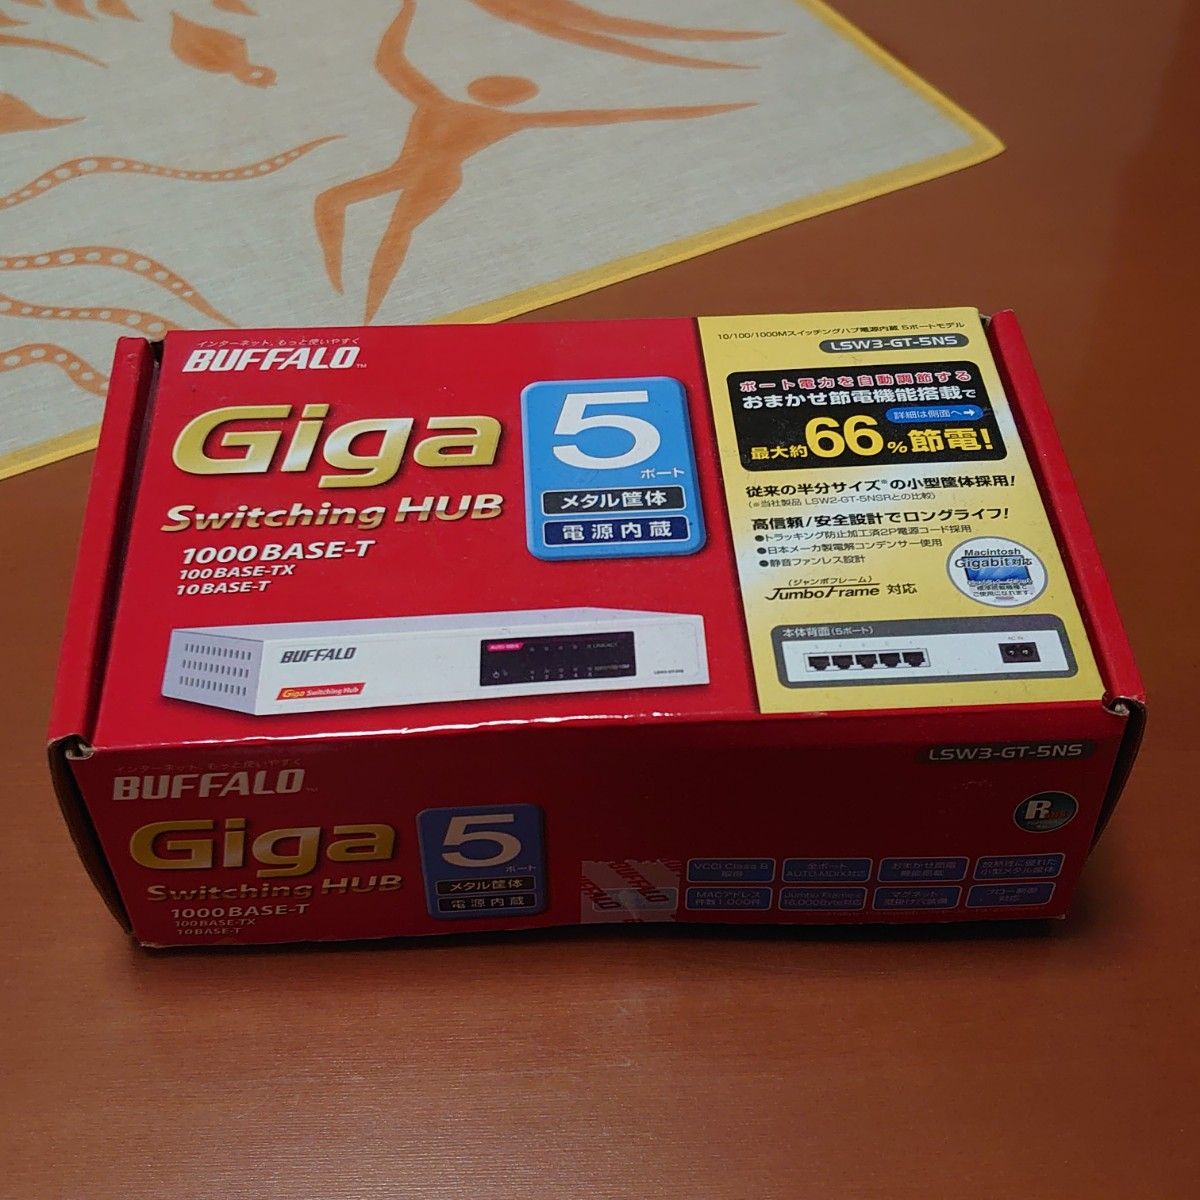 BUFFALO Giga対応 金属筺体 電源内蔵 5ポート  スイッチングハブ LSW3-GT-5NS　廃盤未使用品